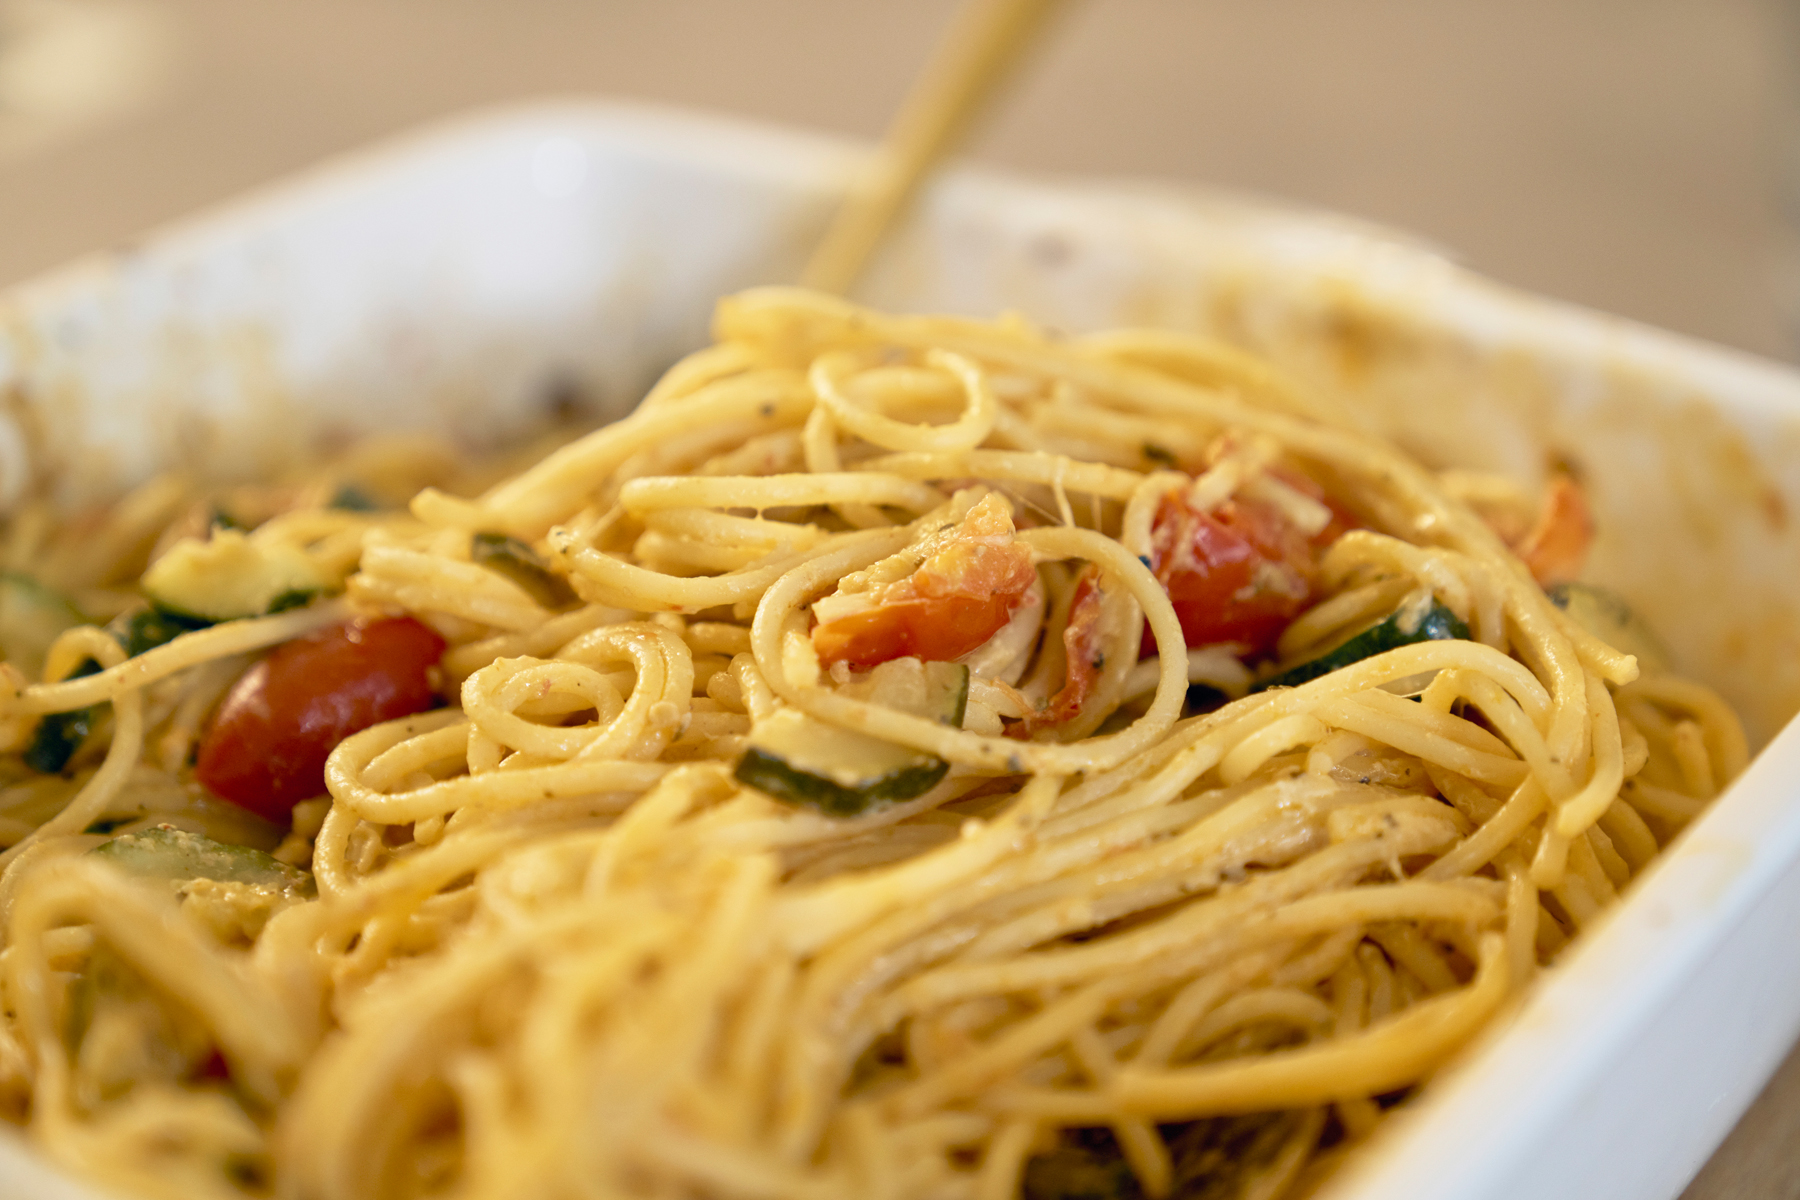 Entdecken Sie, wie Sie mit wenigen Zutaten ein köstliches Gericht zaubern können: Ofengemüse mit Spaghetti und Burrata – perfekt für ein schnelles, aber beeindruckendes Essen.